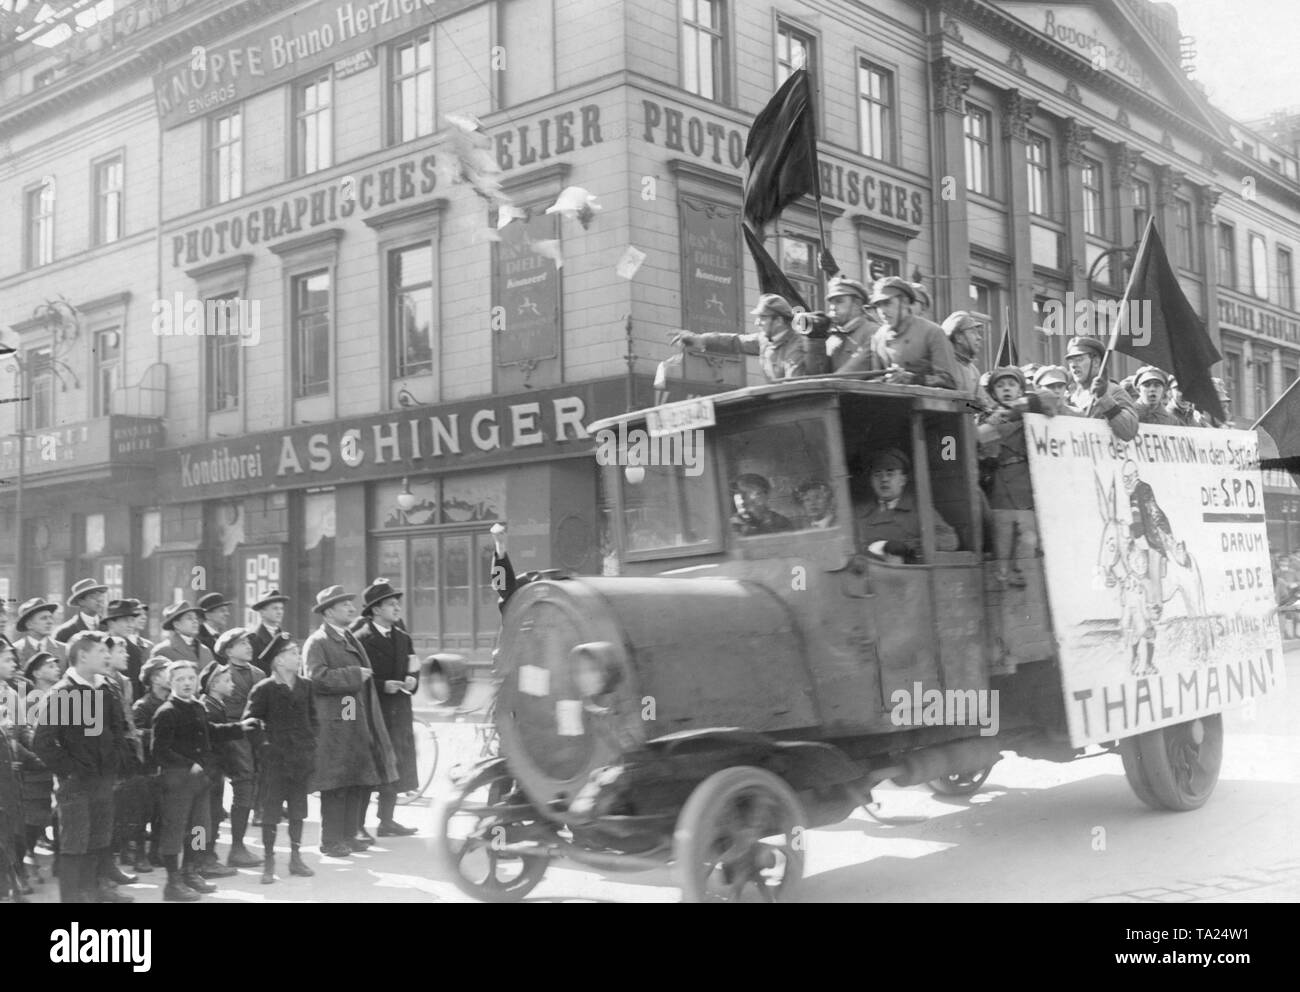 Während der Präsidentschaftswahlen 1932 die Agitation Lkw der KPD fährt durch die Straßen von Berlin und macht Kundenwerbung gegen die SPD, die von den Kommunisten gehasst. Auf dem Plakat auf der Seite des Auto, 'Wer hilft der Reaktion im Sattel?" Der SPD. Daher sind alle Stimmen für Thälmann!' Stockfoto